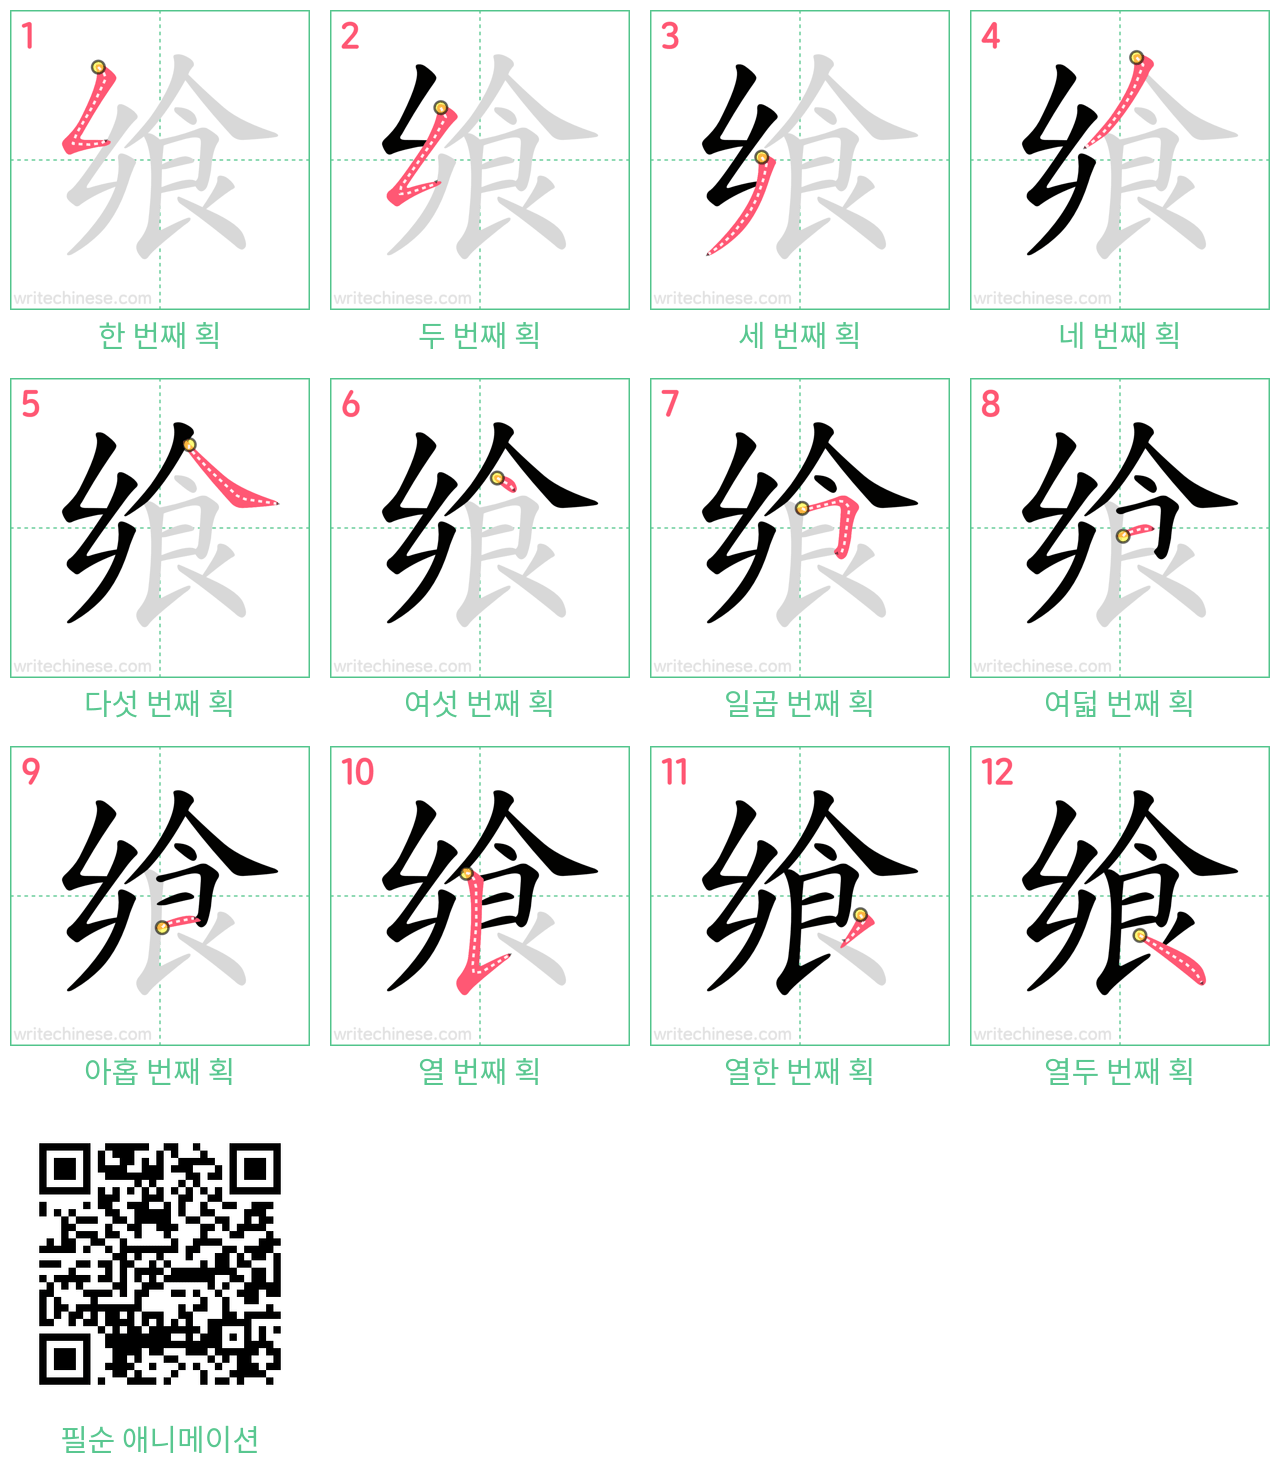 飨 step-by-step stroke order diagrams